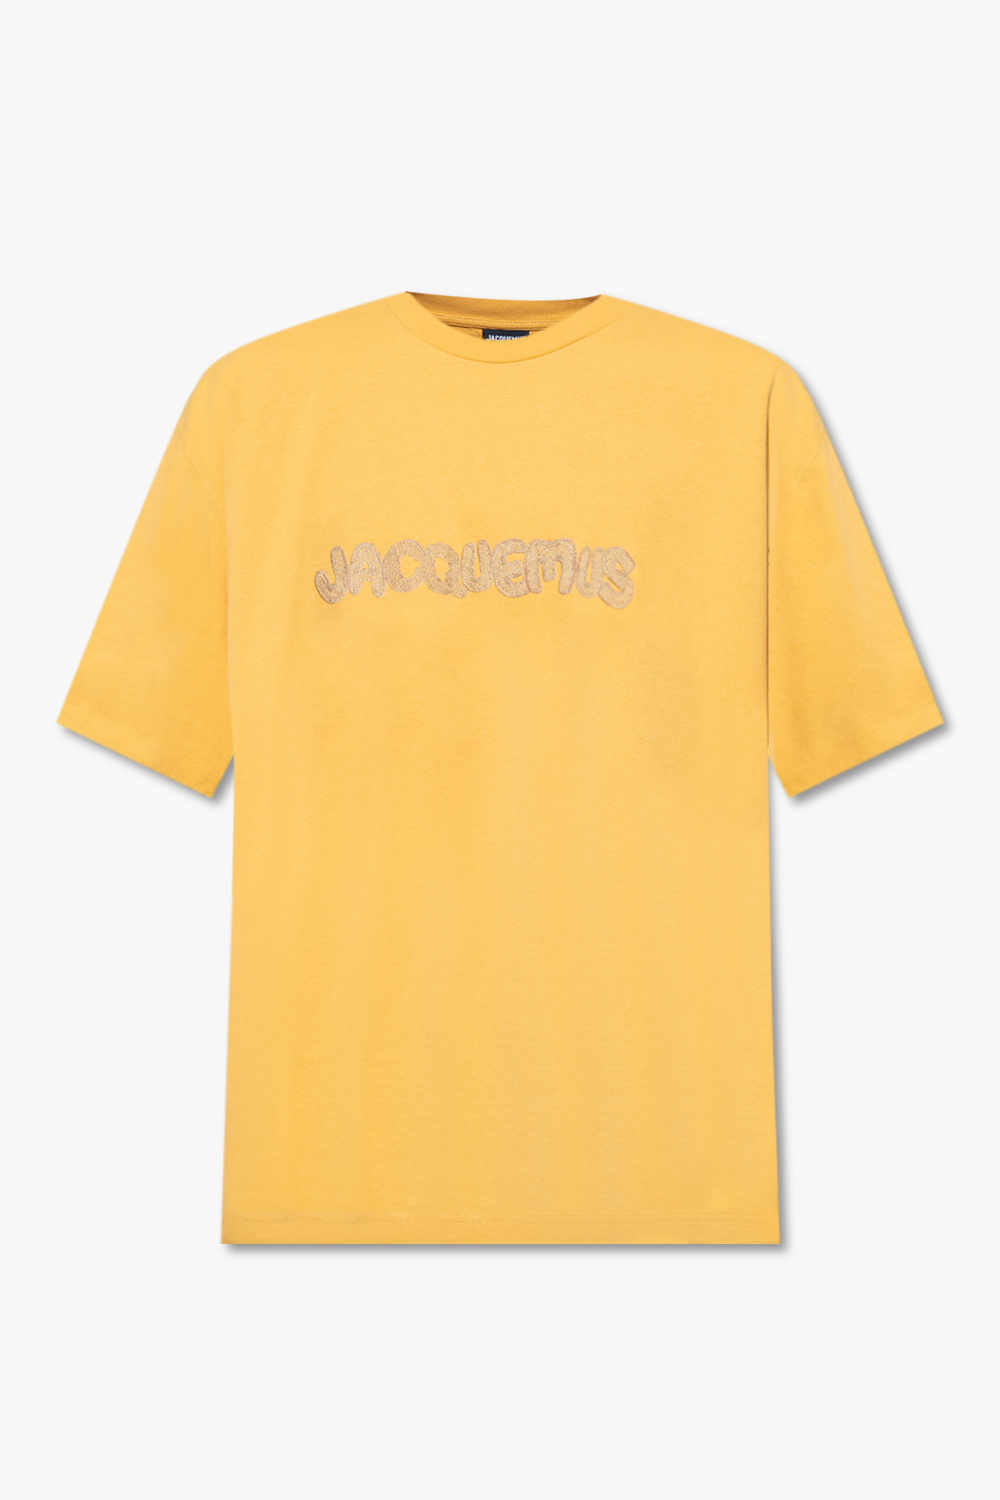 Orange 'Raphia' T - SchaferandweinerShops Australia - M Spire Alpine Gtx®  Jacket - shirt with logo Jacquemus